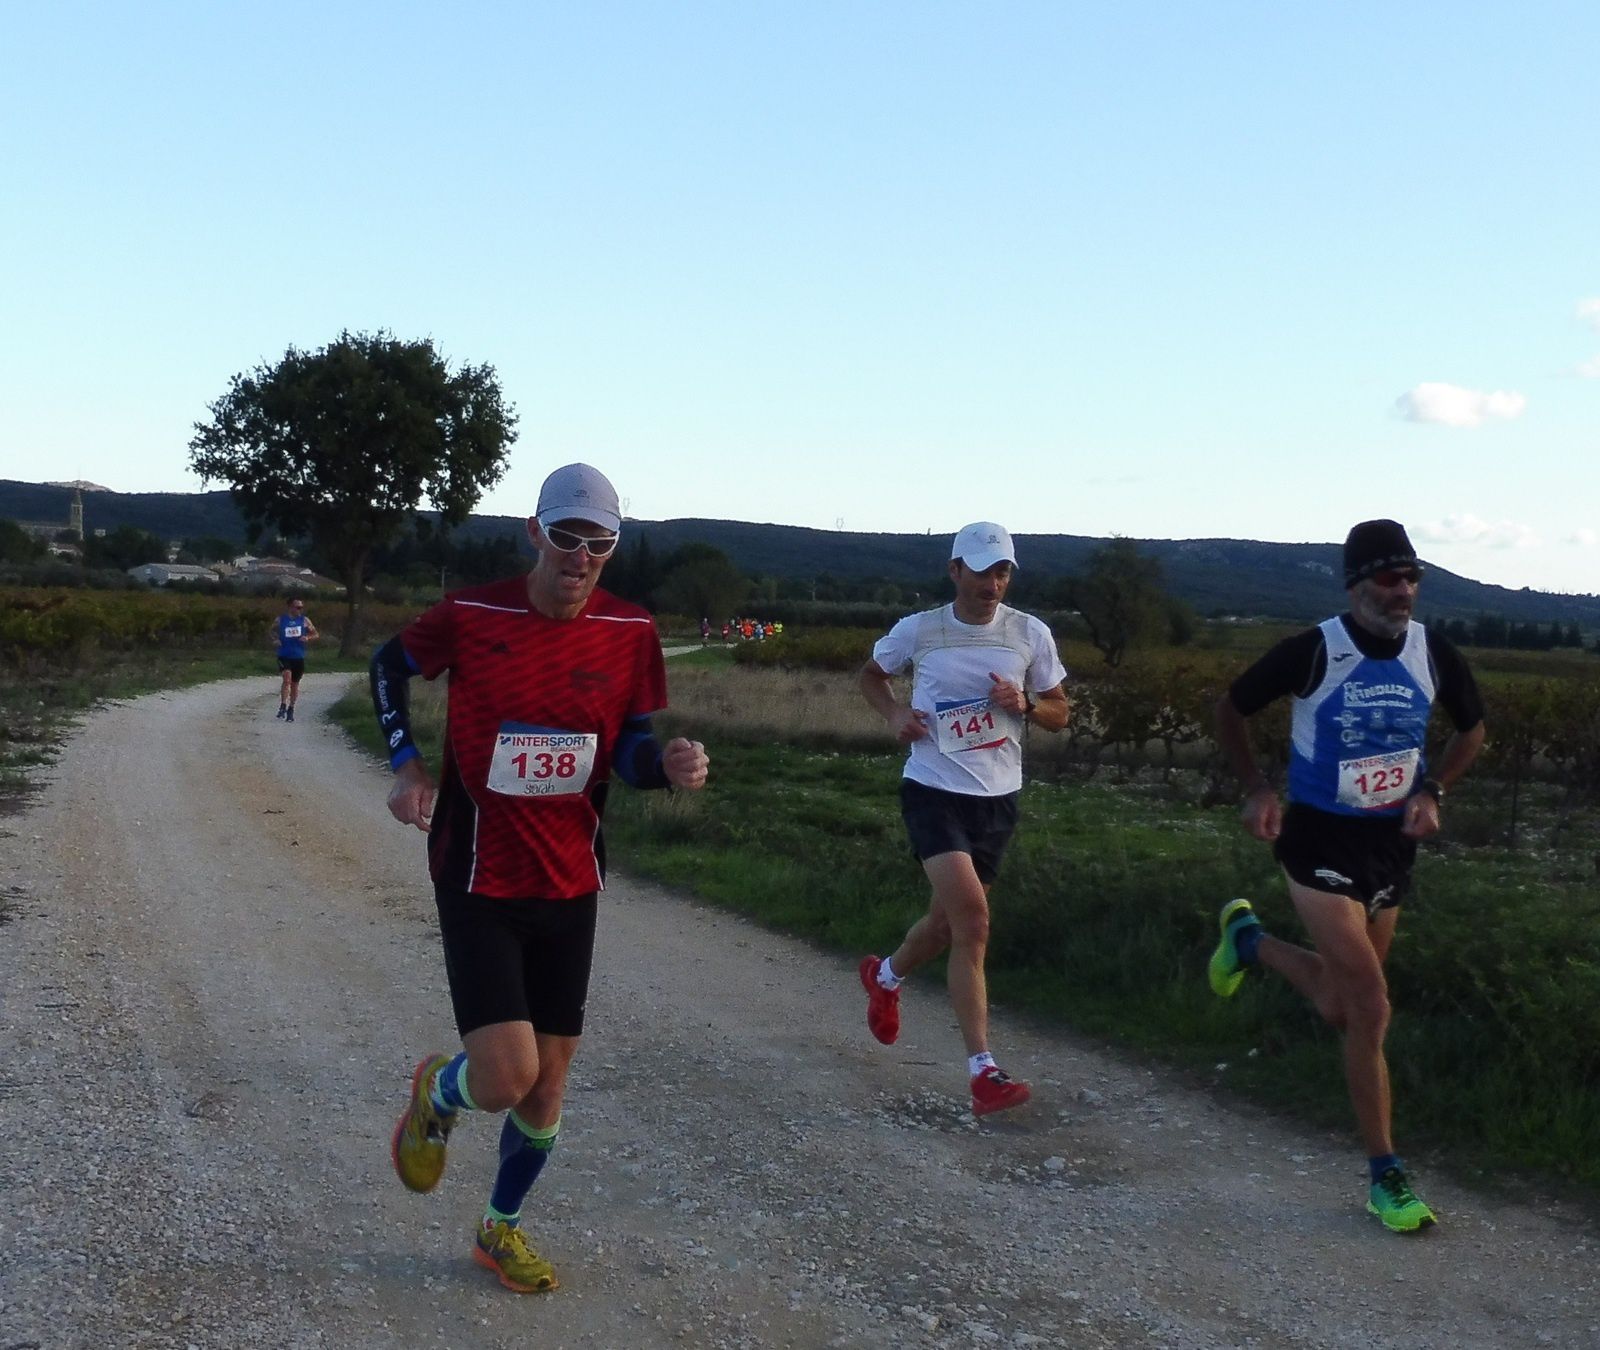 Les 3 premiers du 10 km, 1 Laurent Lafare (141), 2 Michael Gil (138) et 3 Jean-Claude Benoît (123). 